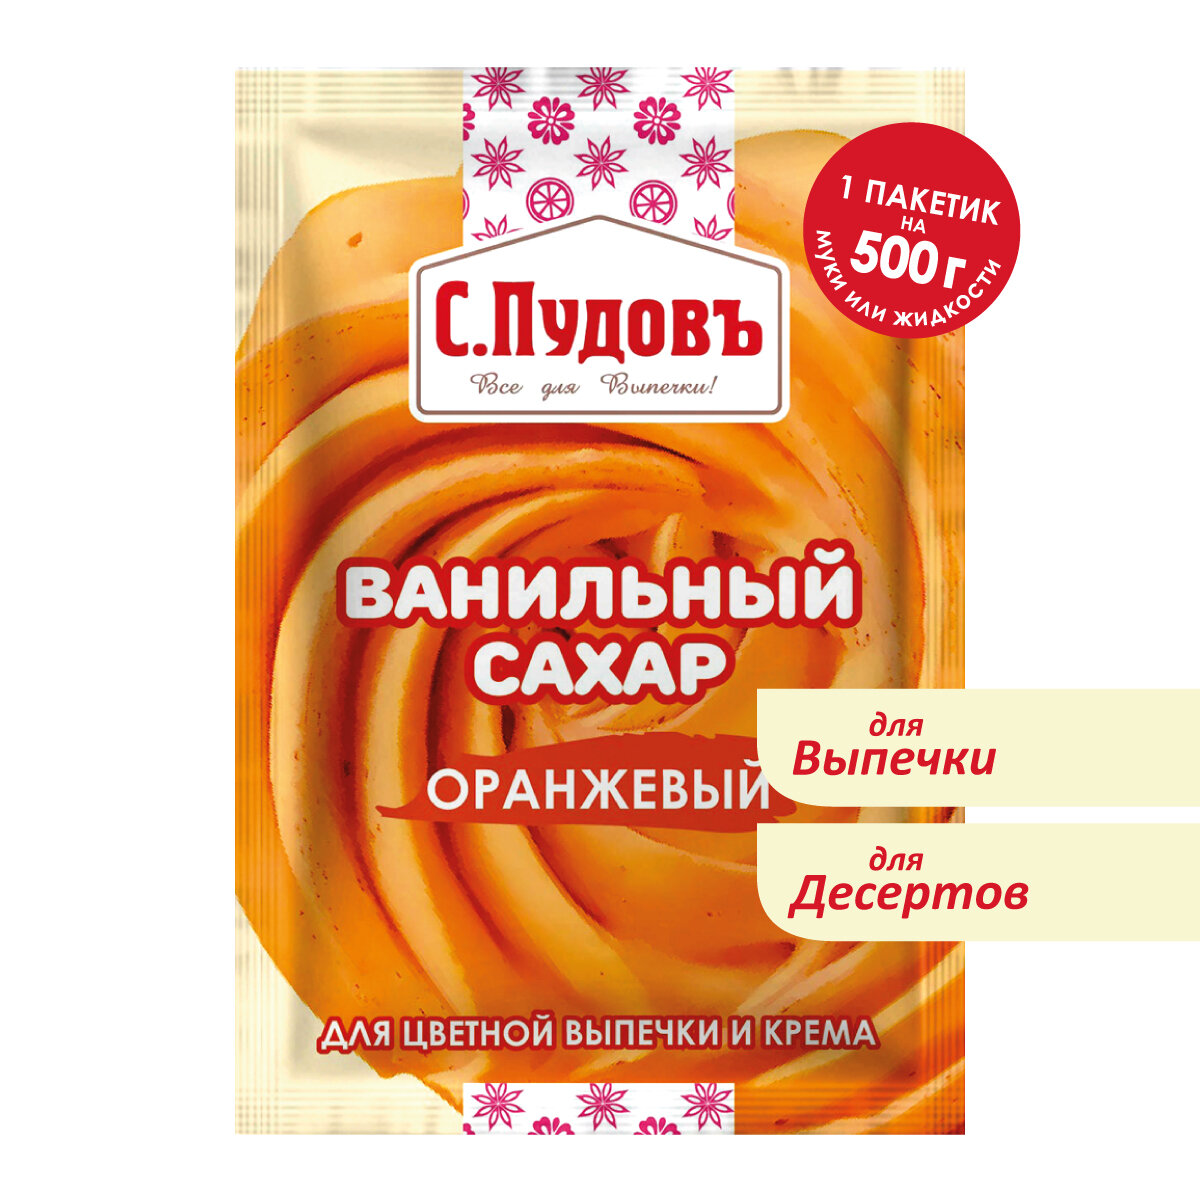 Ванильный сахар оранжевый С. Пудовъ, 8 г